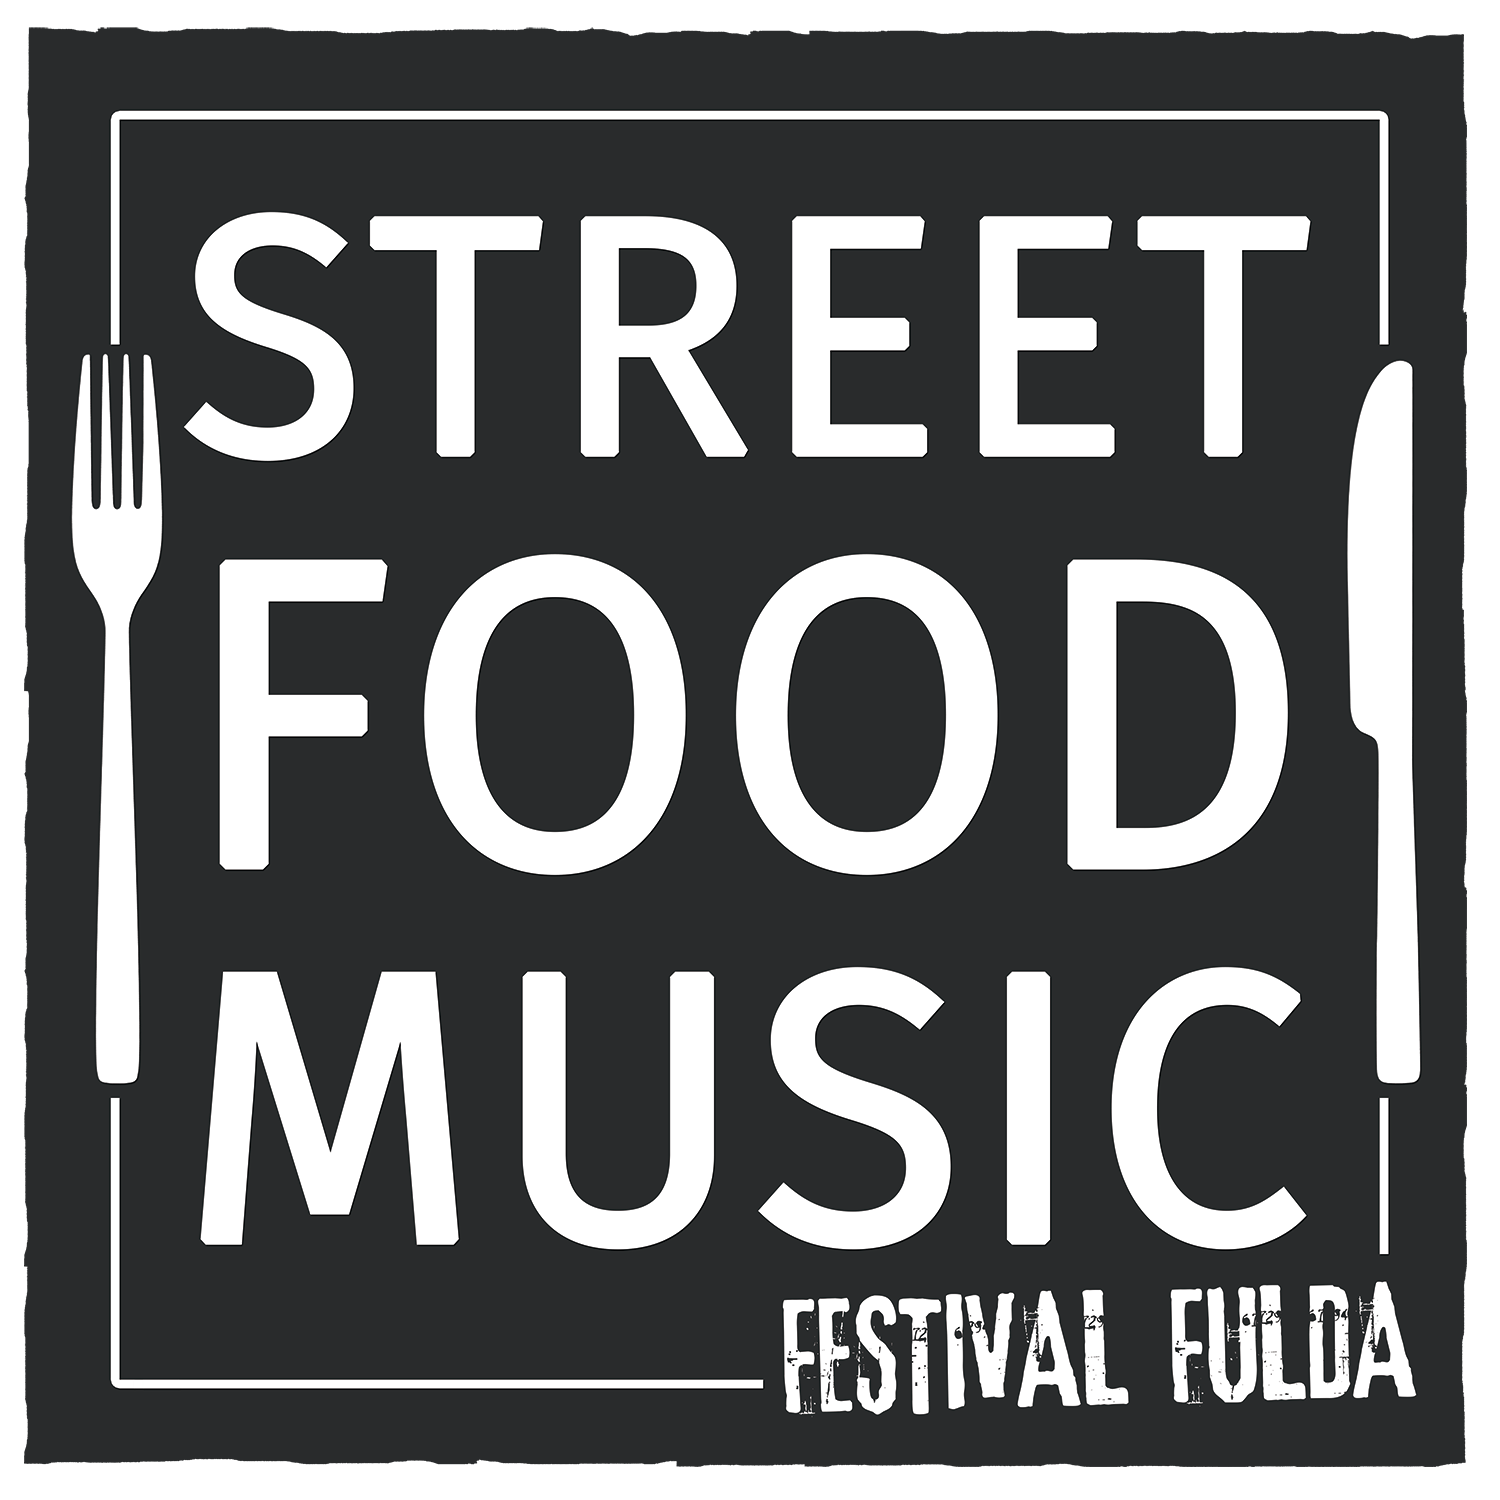 Street Food & Music Festival Fulda